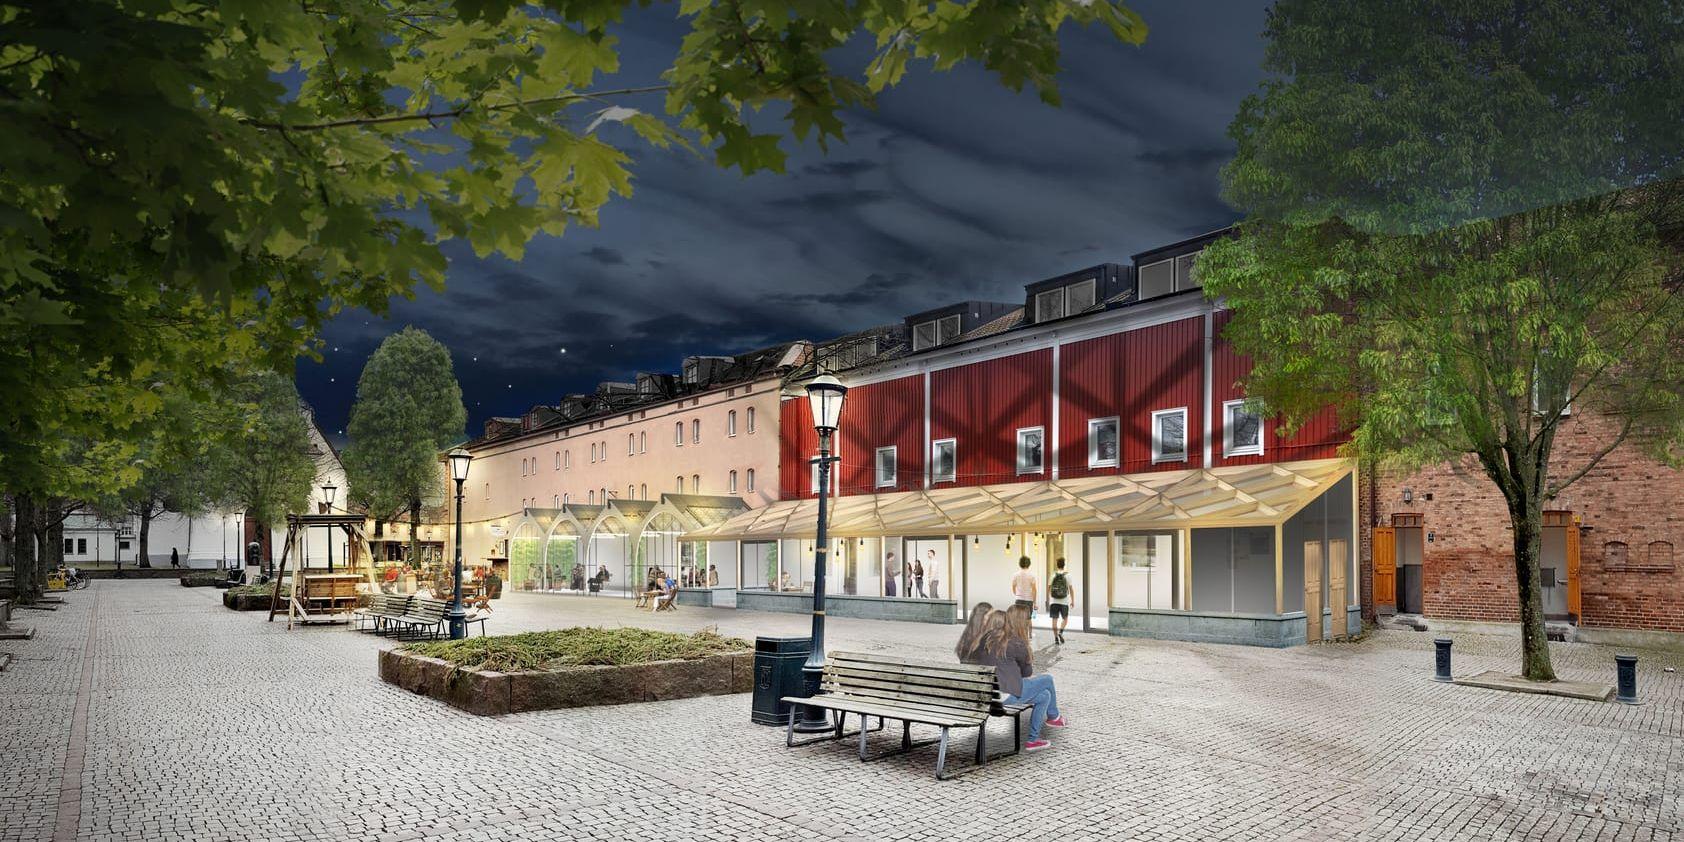 Idéskissen visar hur en inglasad utbyggnad i Brunnsparken skulle kunna se ut. Bild: Göran Lindeberg.